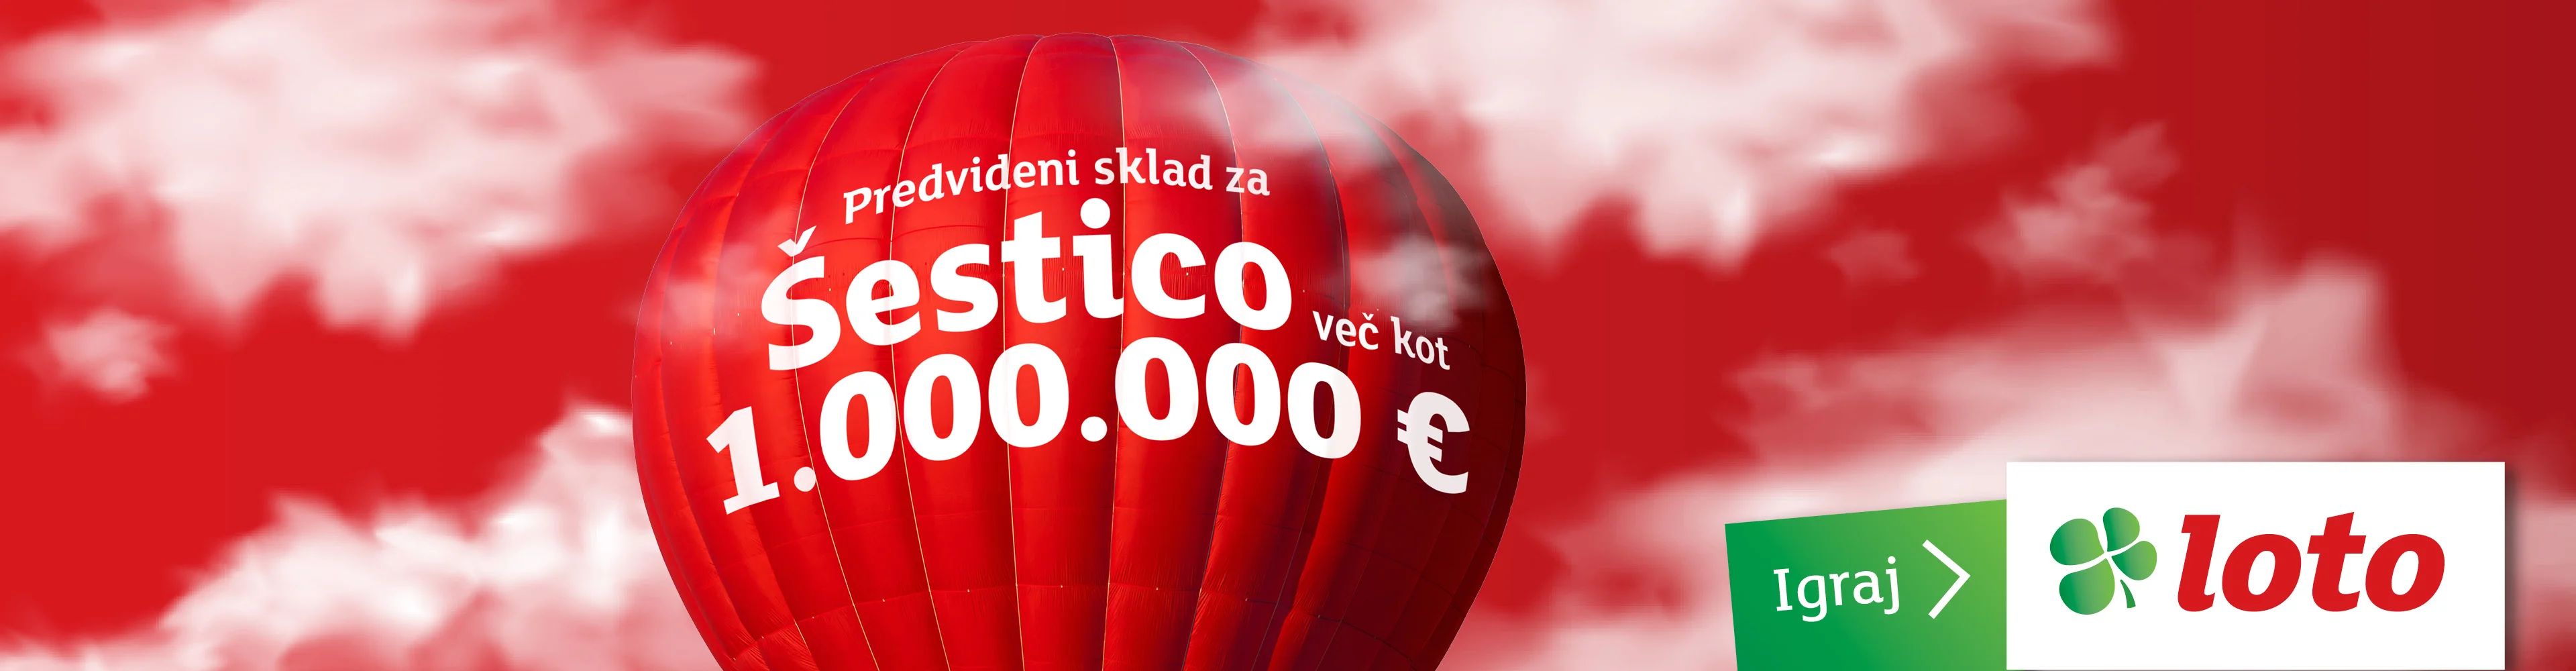 Predvideni sklad za Šestico več kot 1.000.000 €. Igraj Loto.